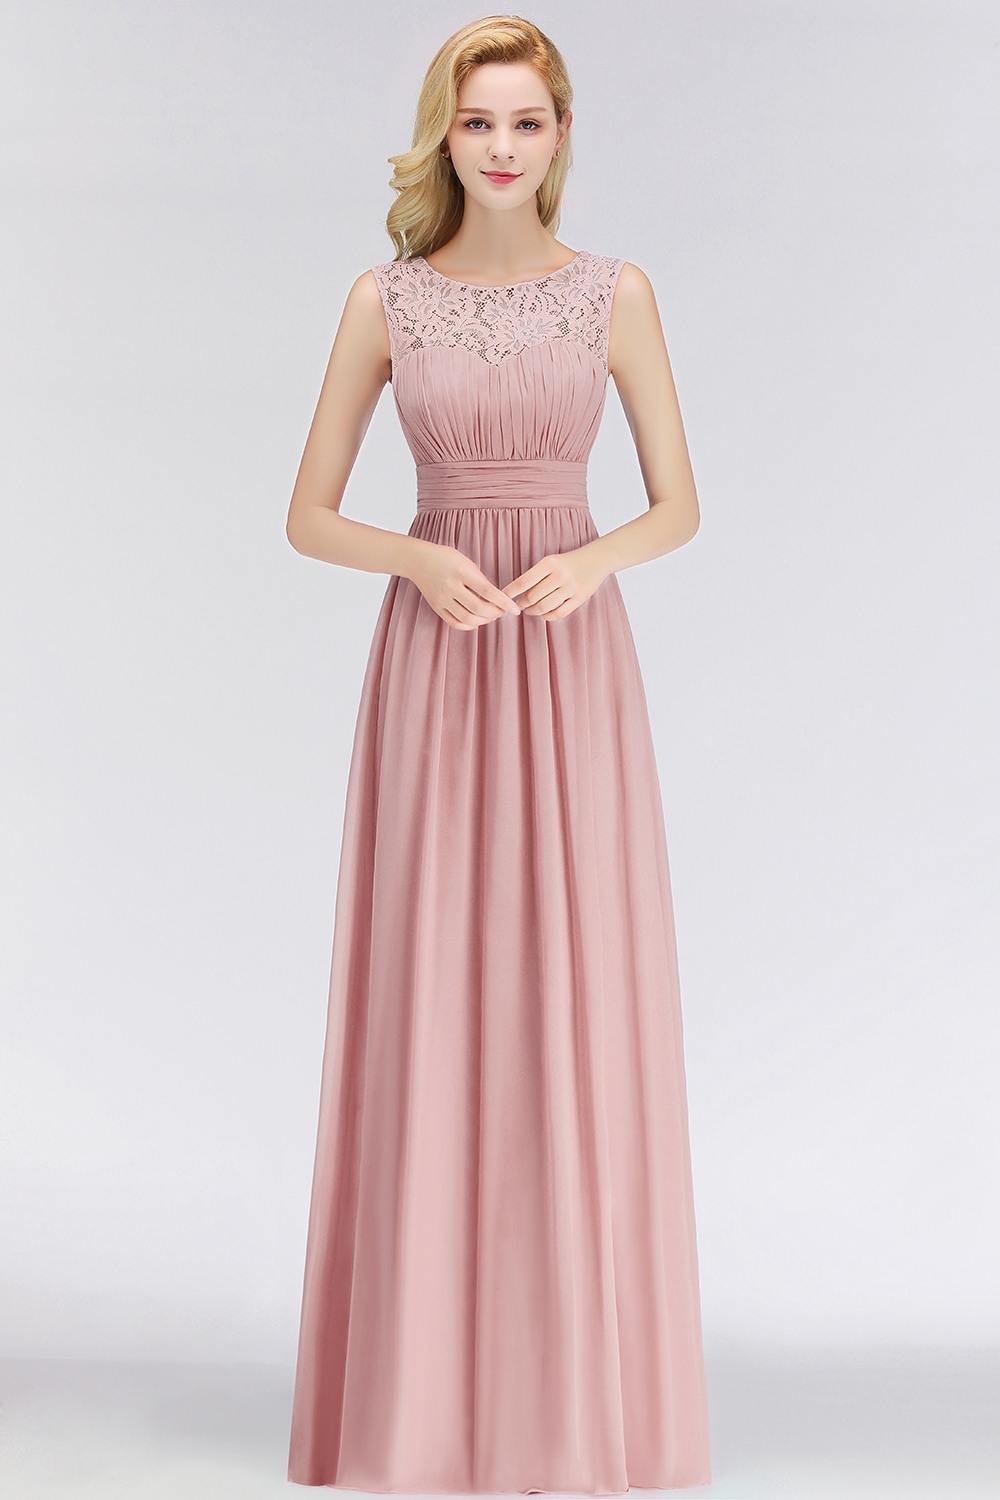 15 Elegant Kleid Lang Altrosa für 201910 Schön Kleid Lang Altrosa Boutique